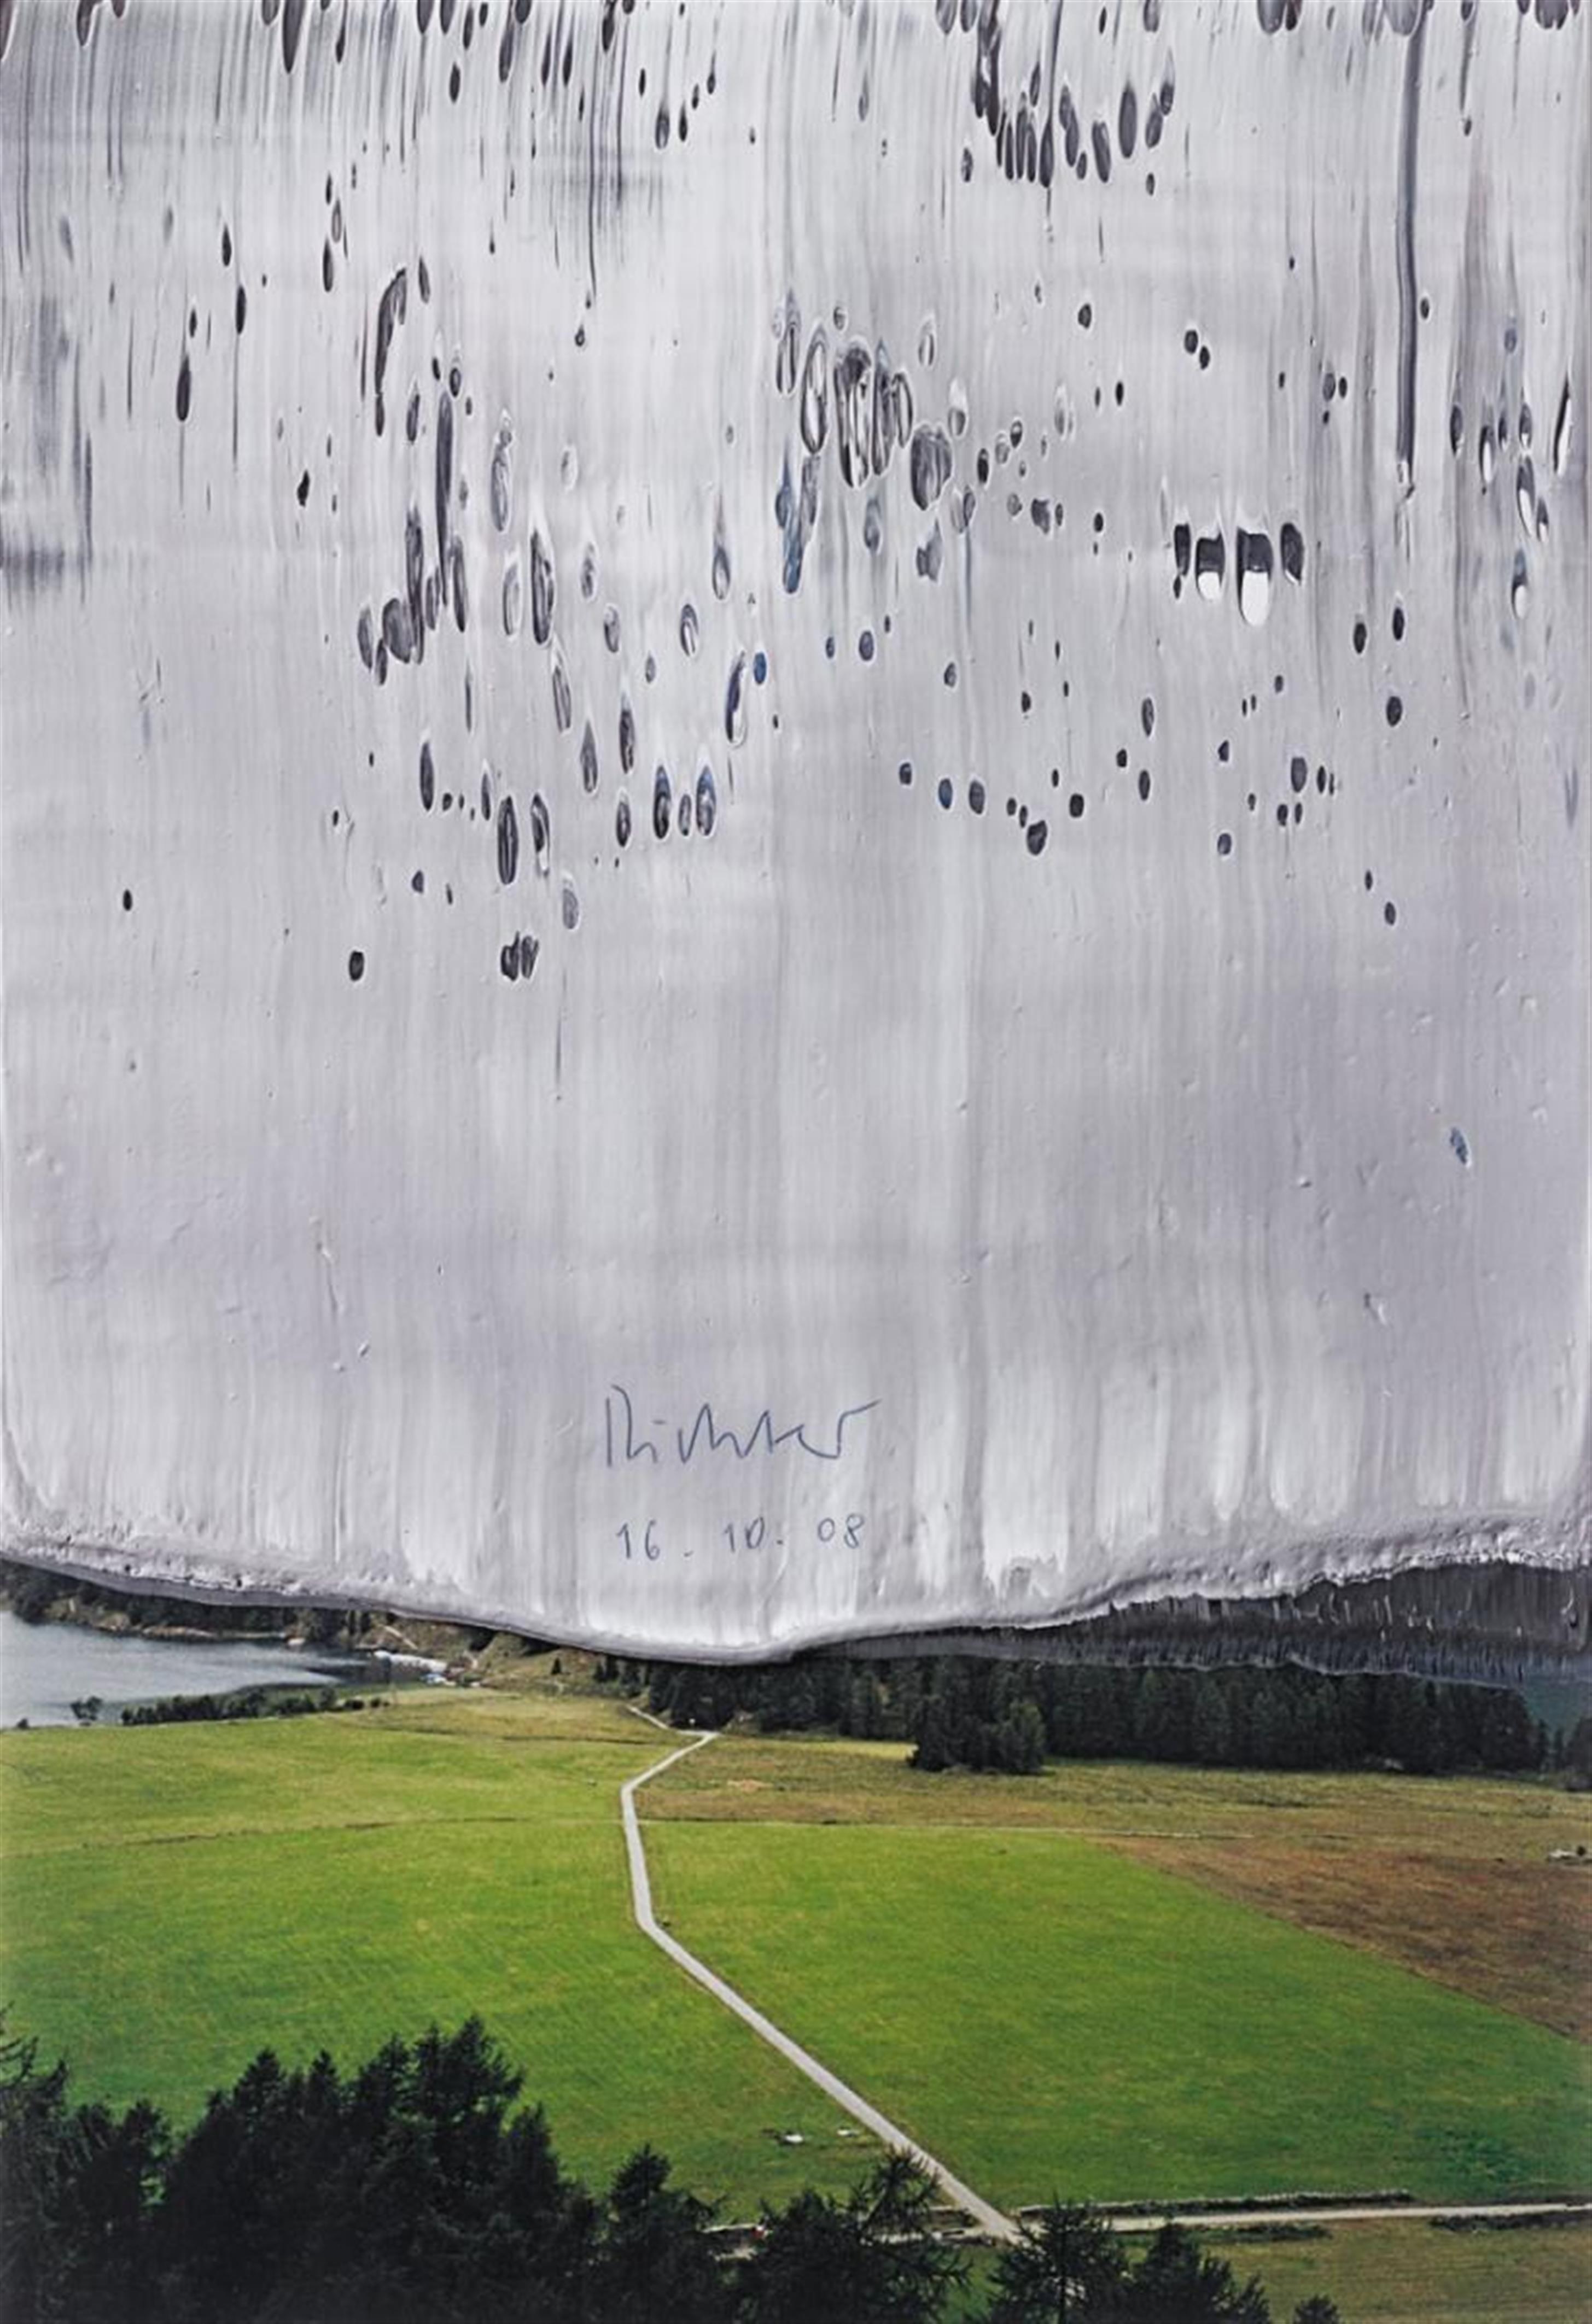 Gerhard Richter - Untitled - image-1